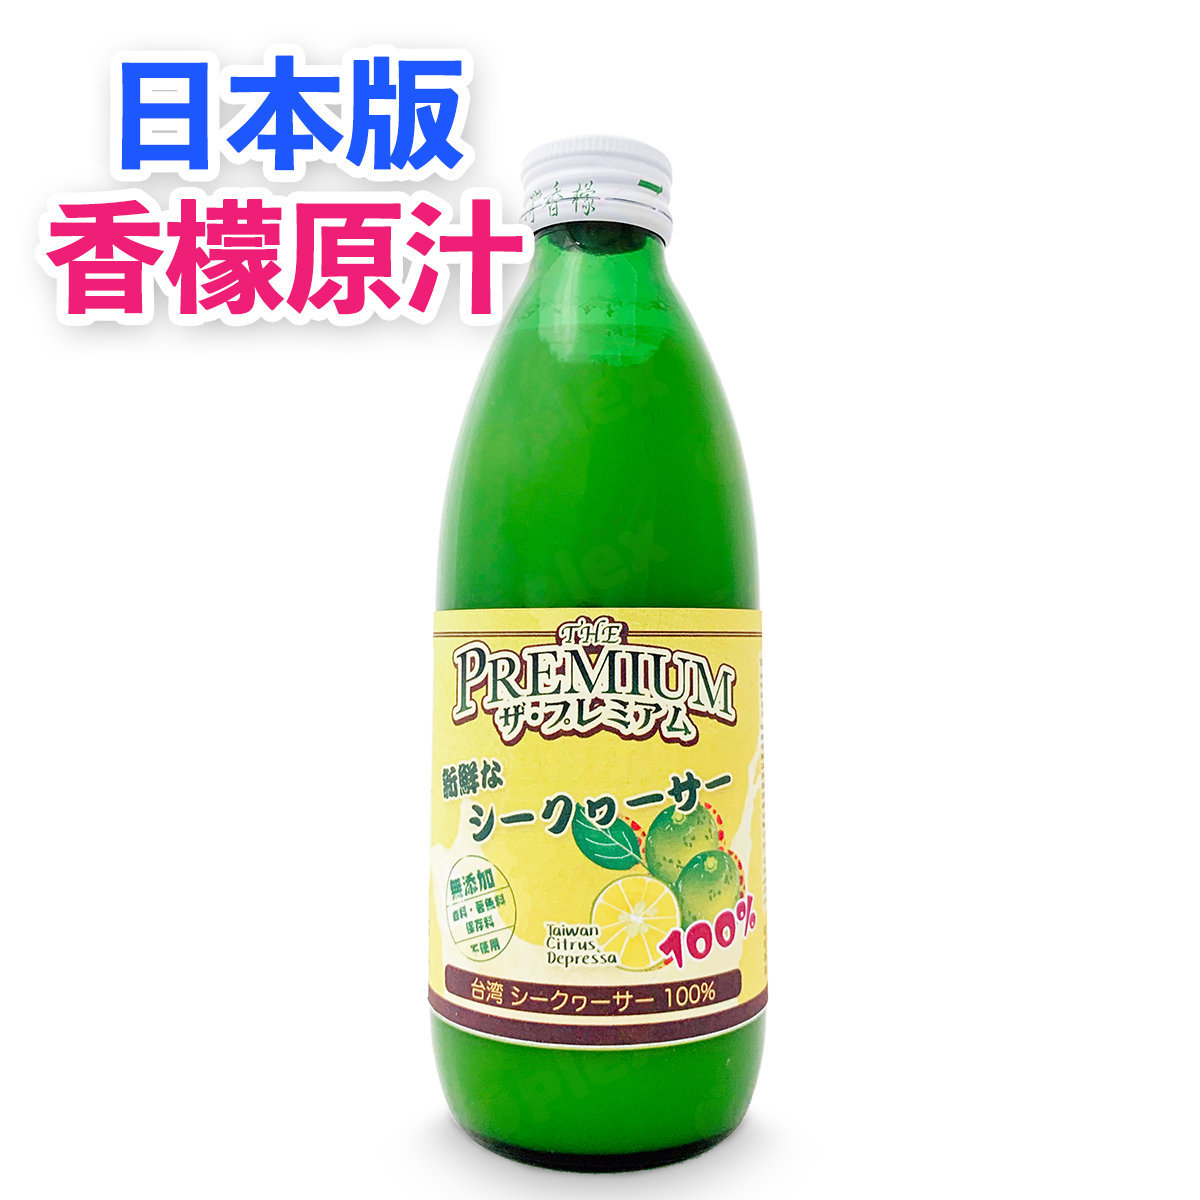 「出口日本」頂級 100% 台灣香檬原汁 (300ml) x 1瓶 (原味不加糖) #恐怖醫學 #川陳皮素 #香檬汁 #無糖 (食用日期:2024年11月26日)